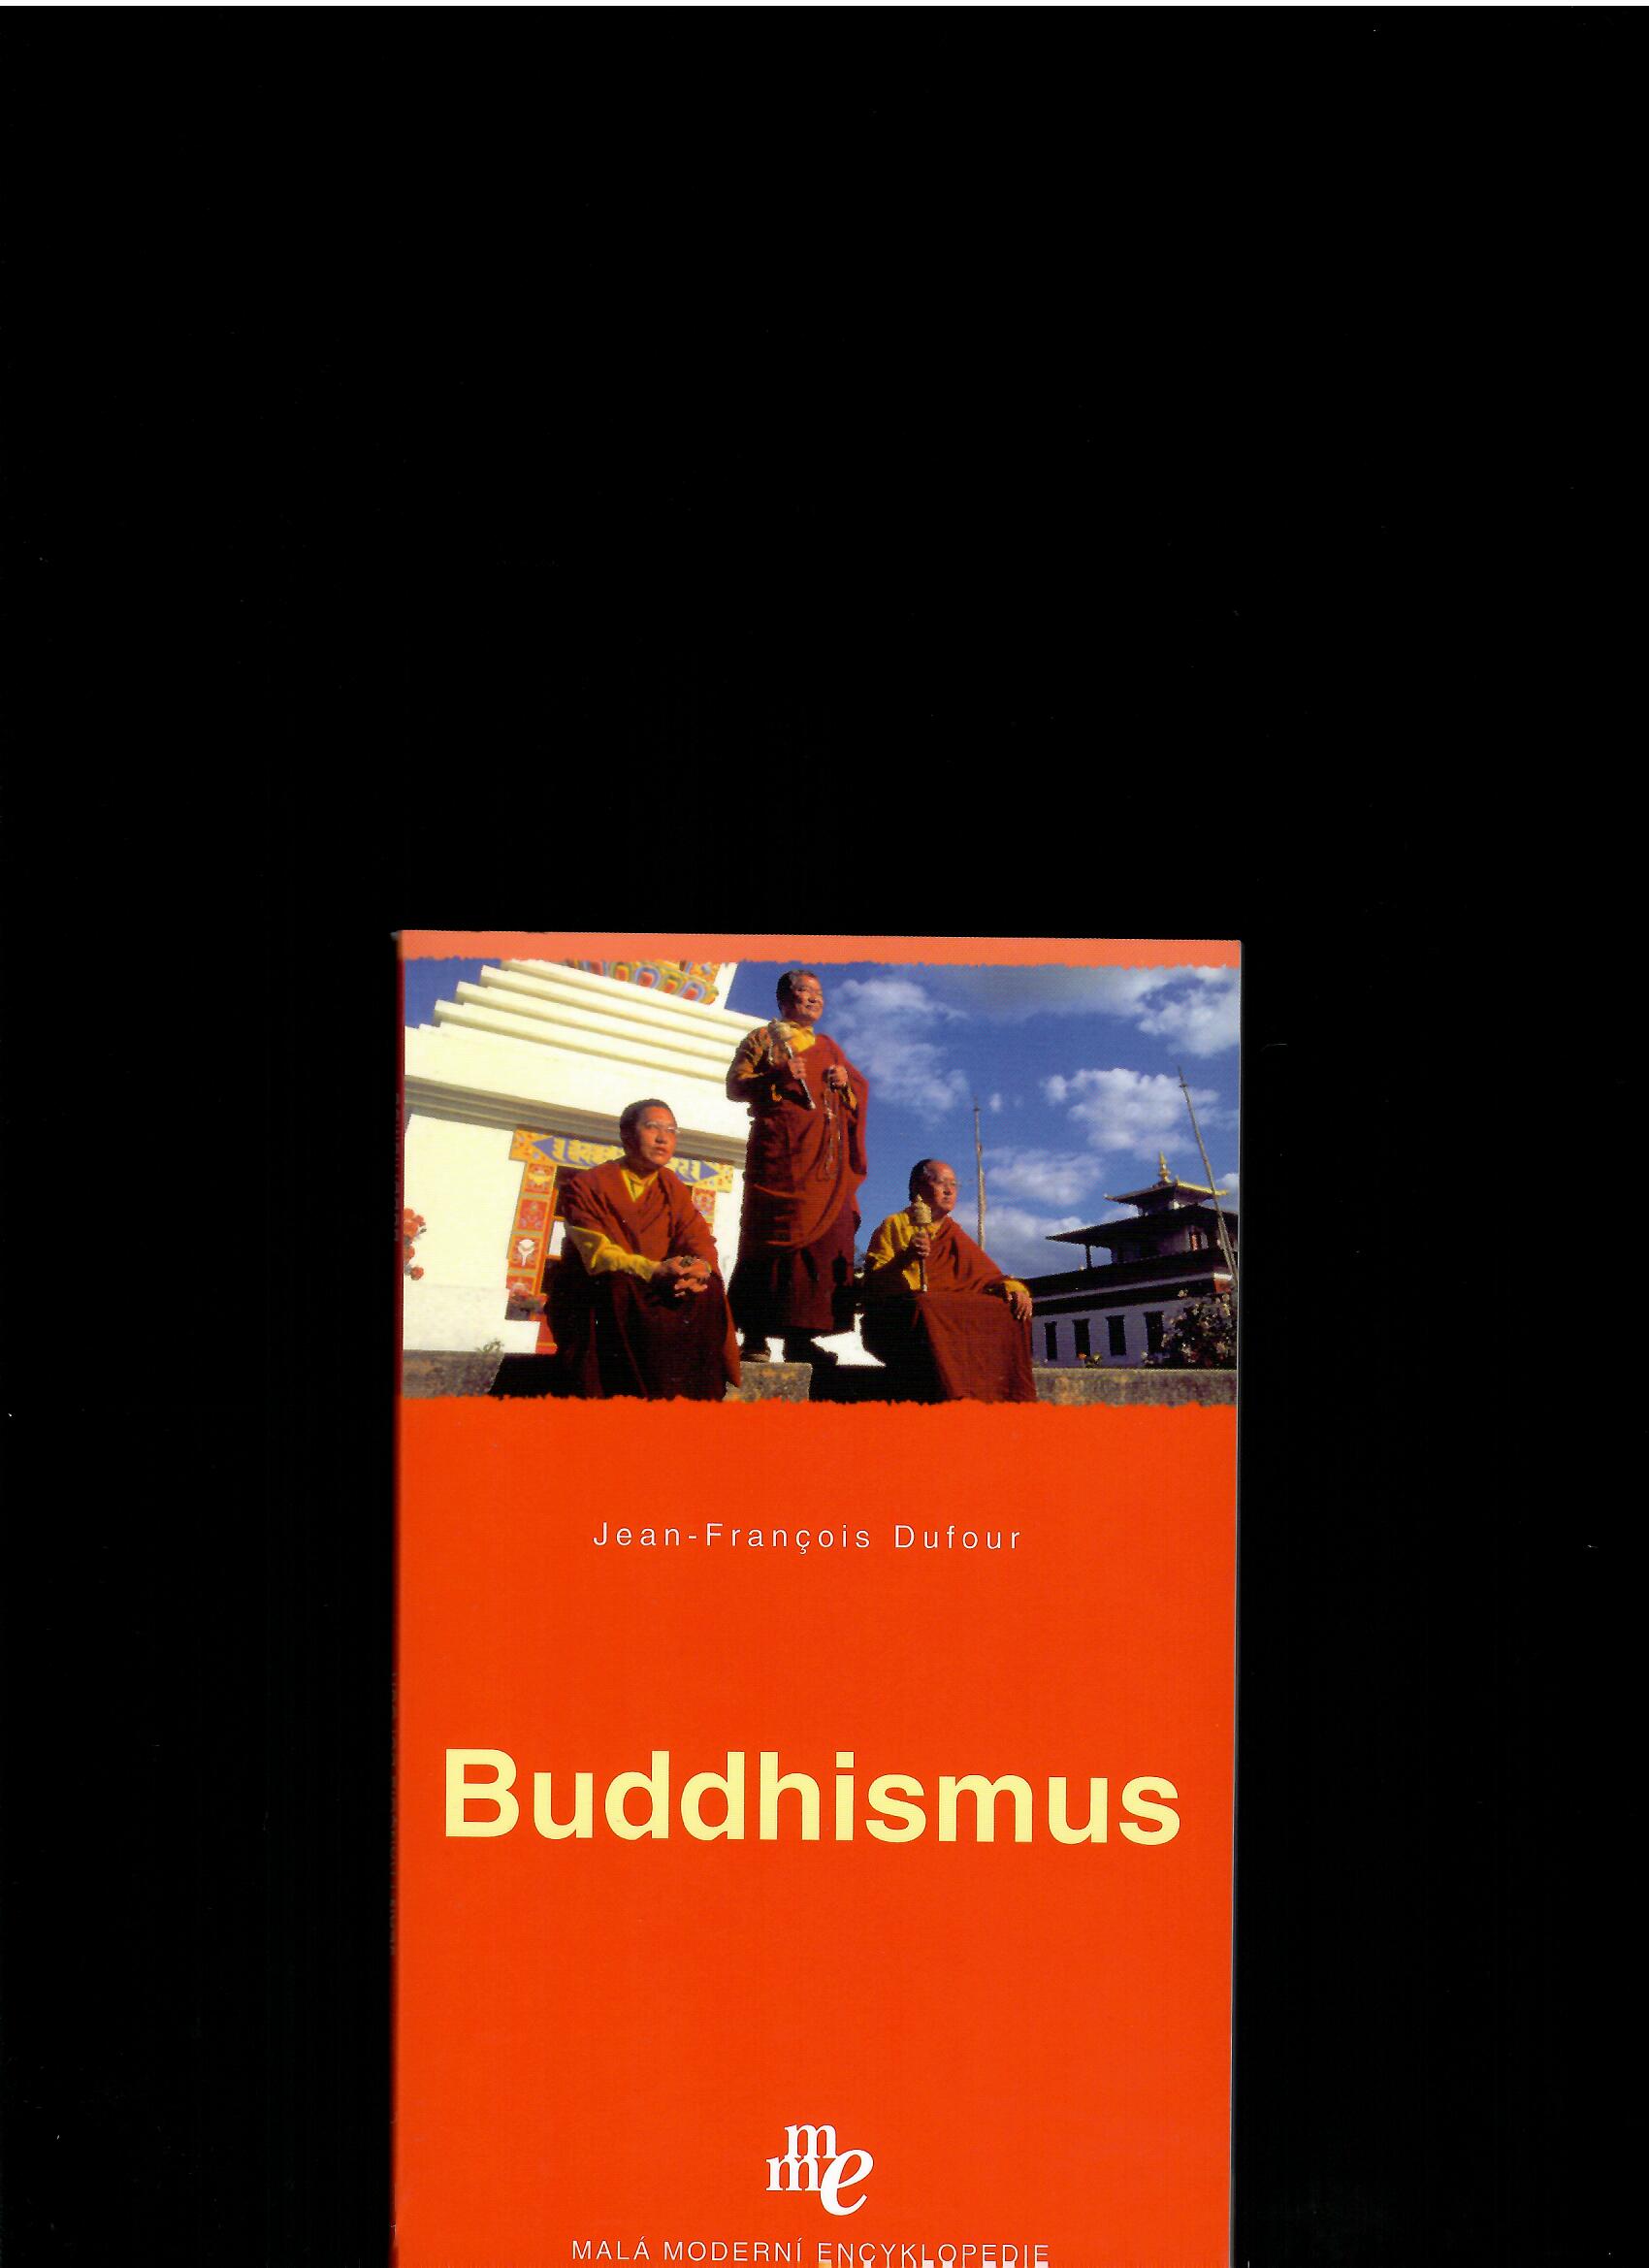 Jean-François Dufour: Buddhismus